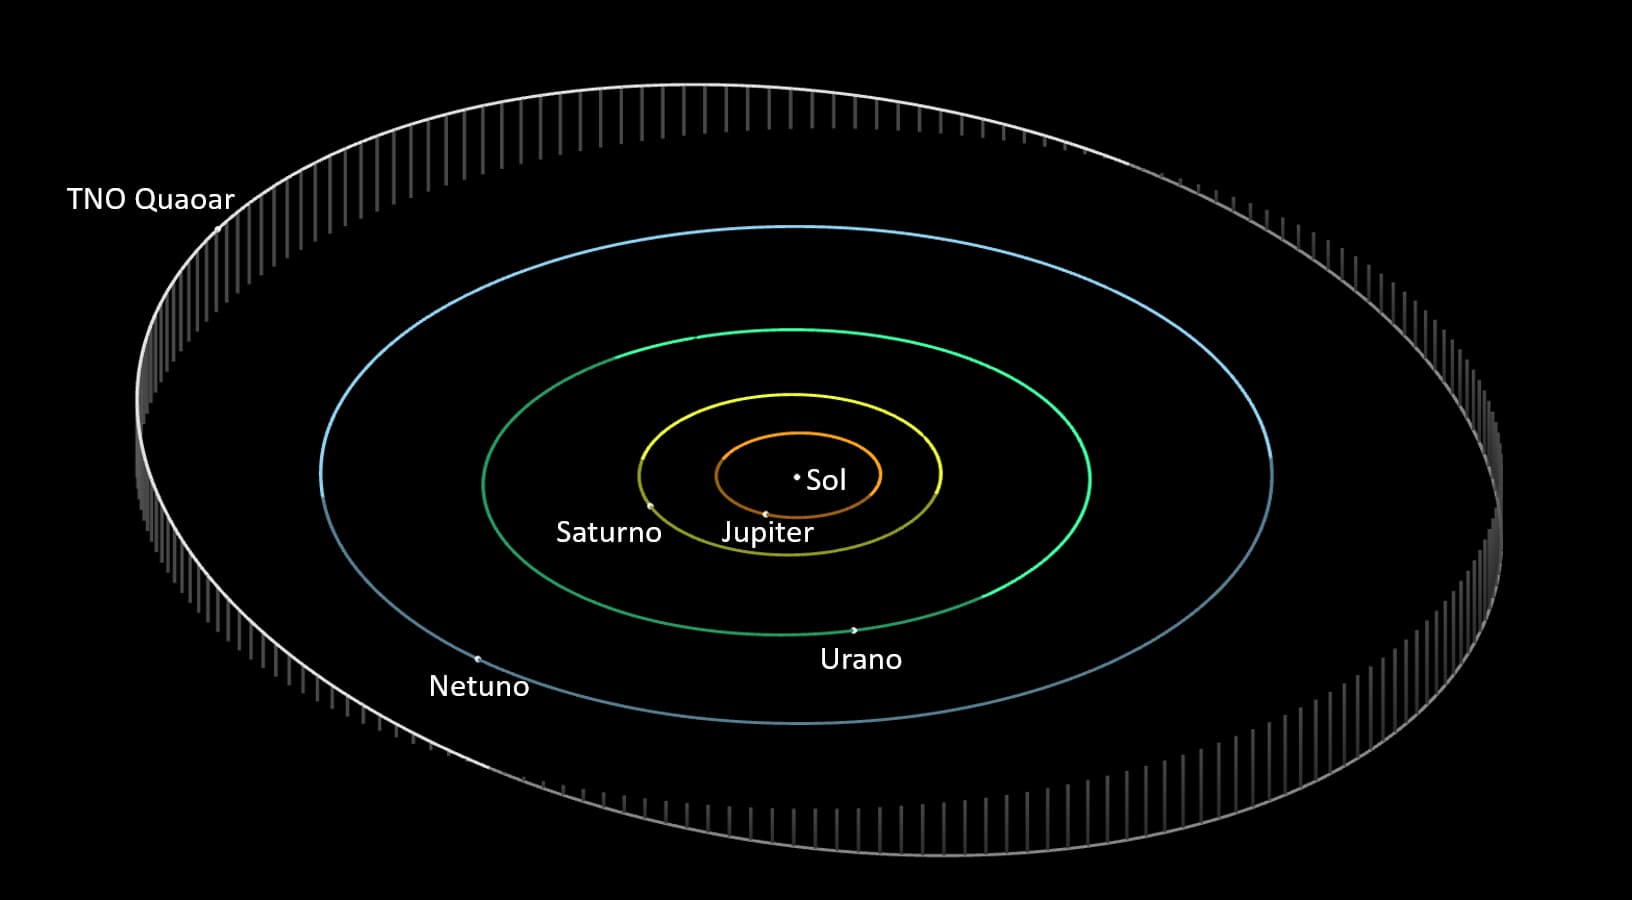 Representação mostra o Sol no centro da imagem, envolto pelas órbitas, em ordem, dos planetas Júpiter, em laranja, Saturno, em amarelo, Urano, em verde, e Netuno, em azul. Por último, está a órbita de Quaoar, em cinza.